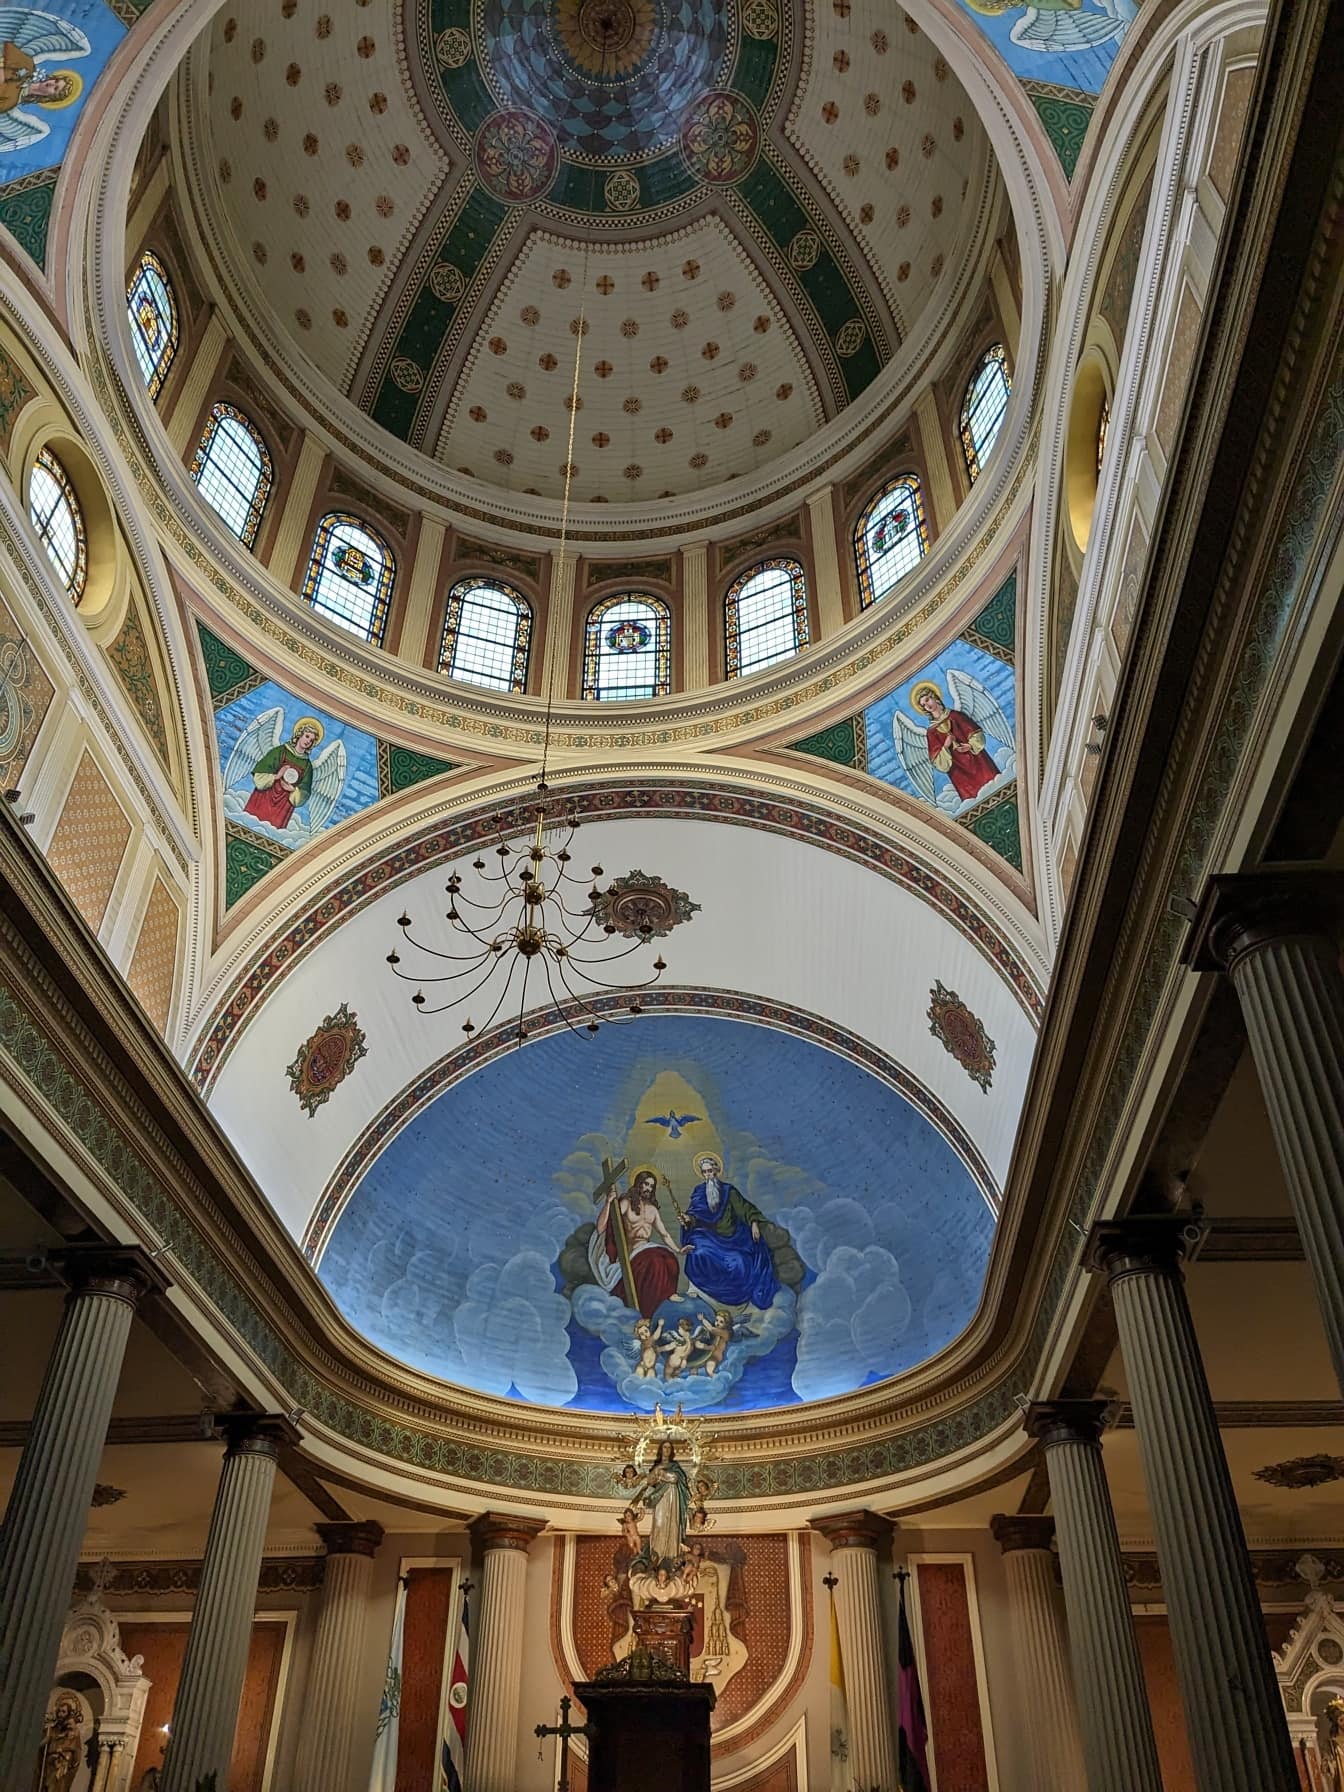 Cattedrale metropolitana di San Jose con cupola e frescco simmetrico sul soffitto